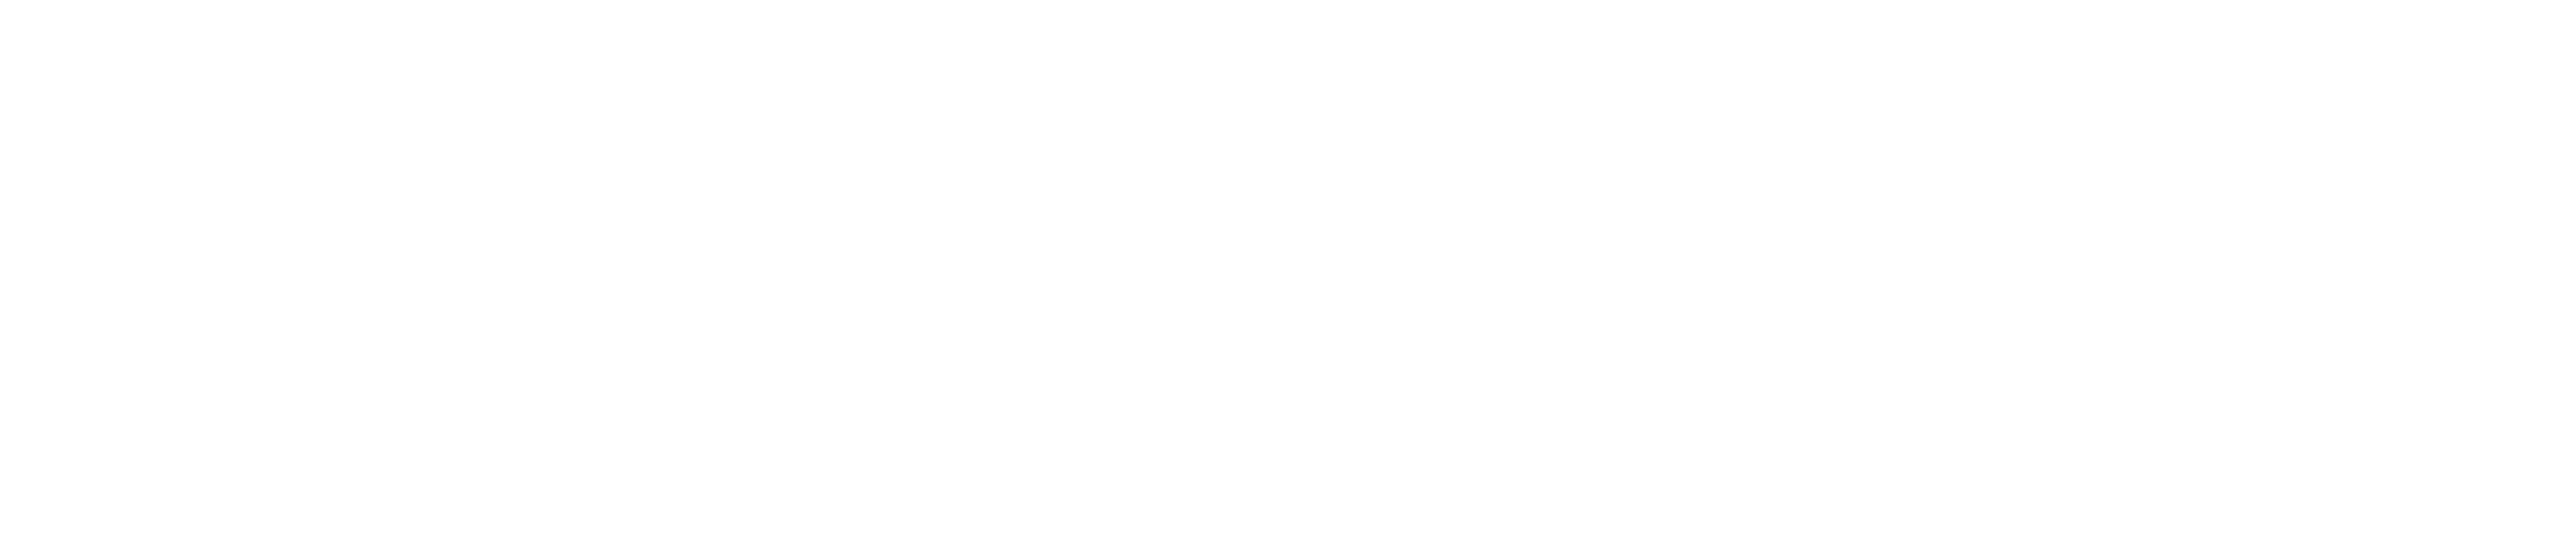 BoråsBilgruppen_PV_vit_vit_liggande-1